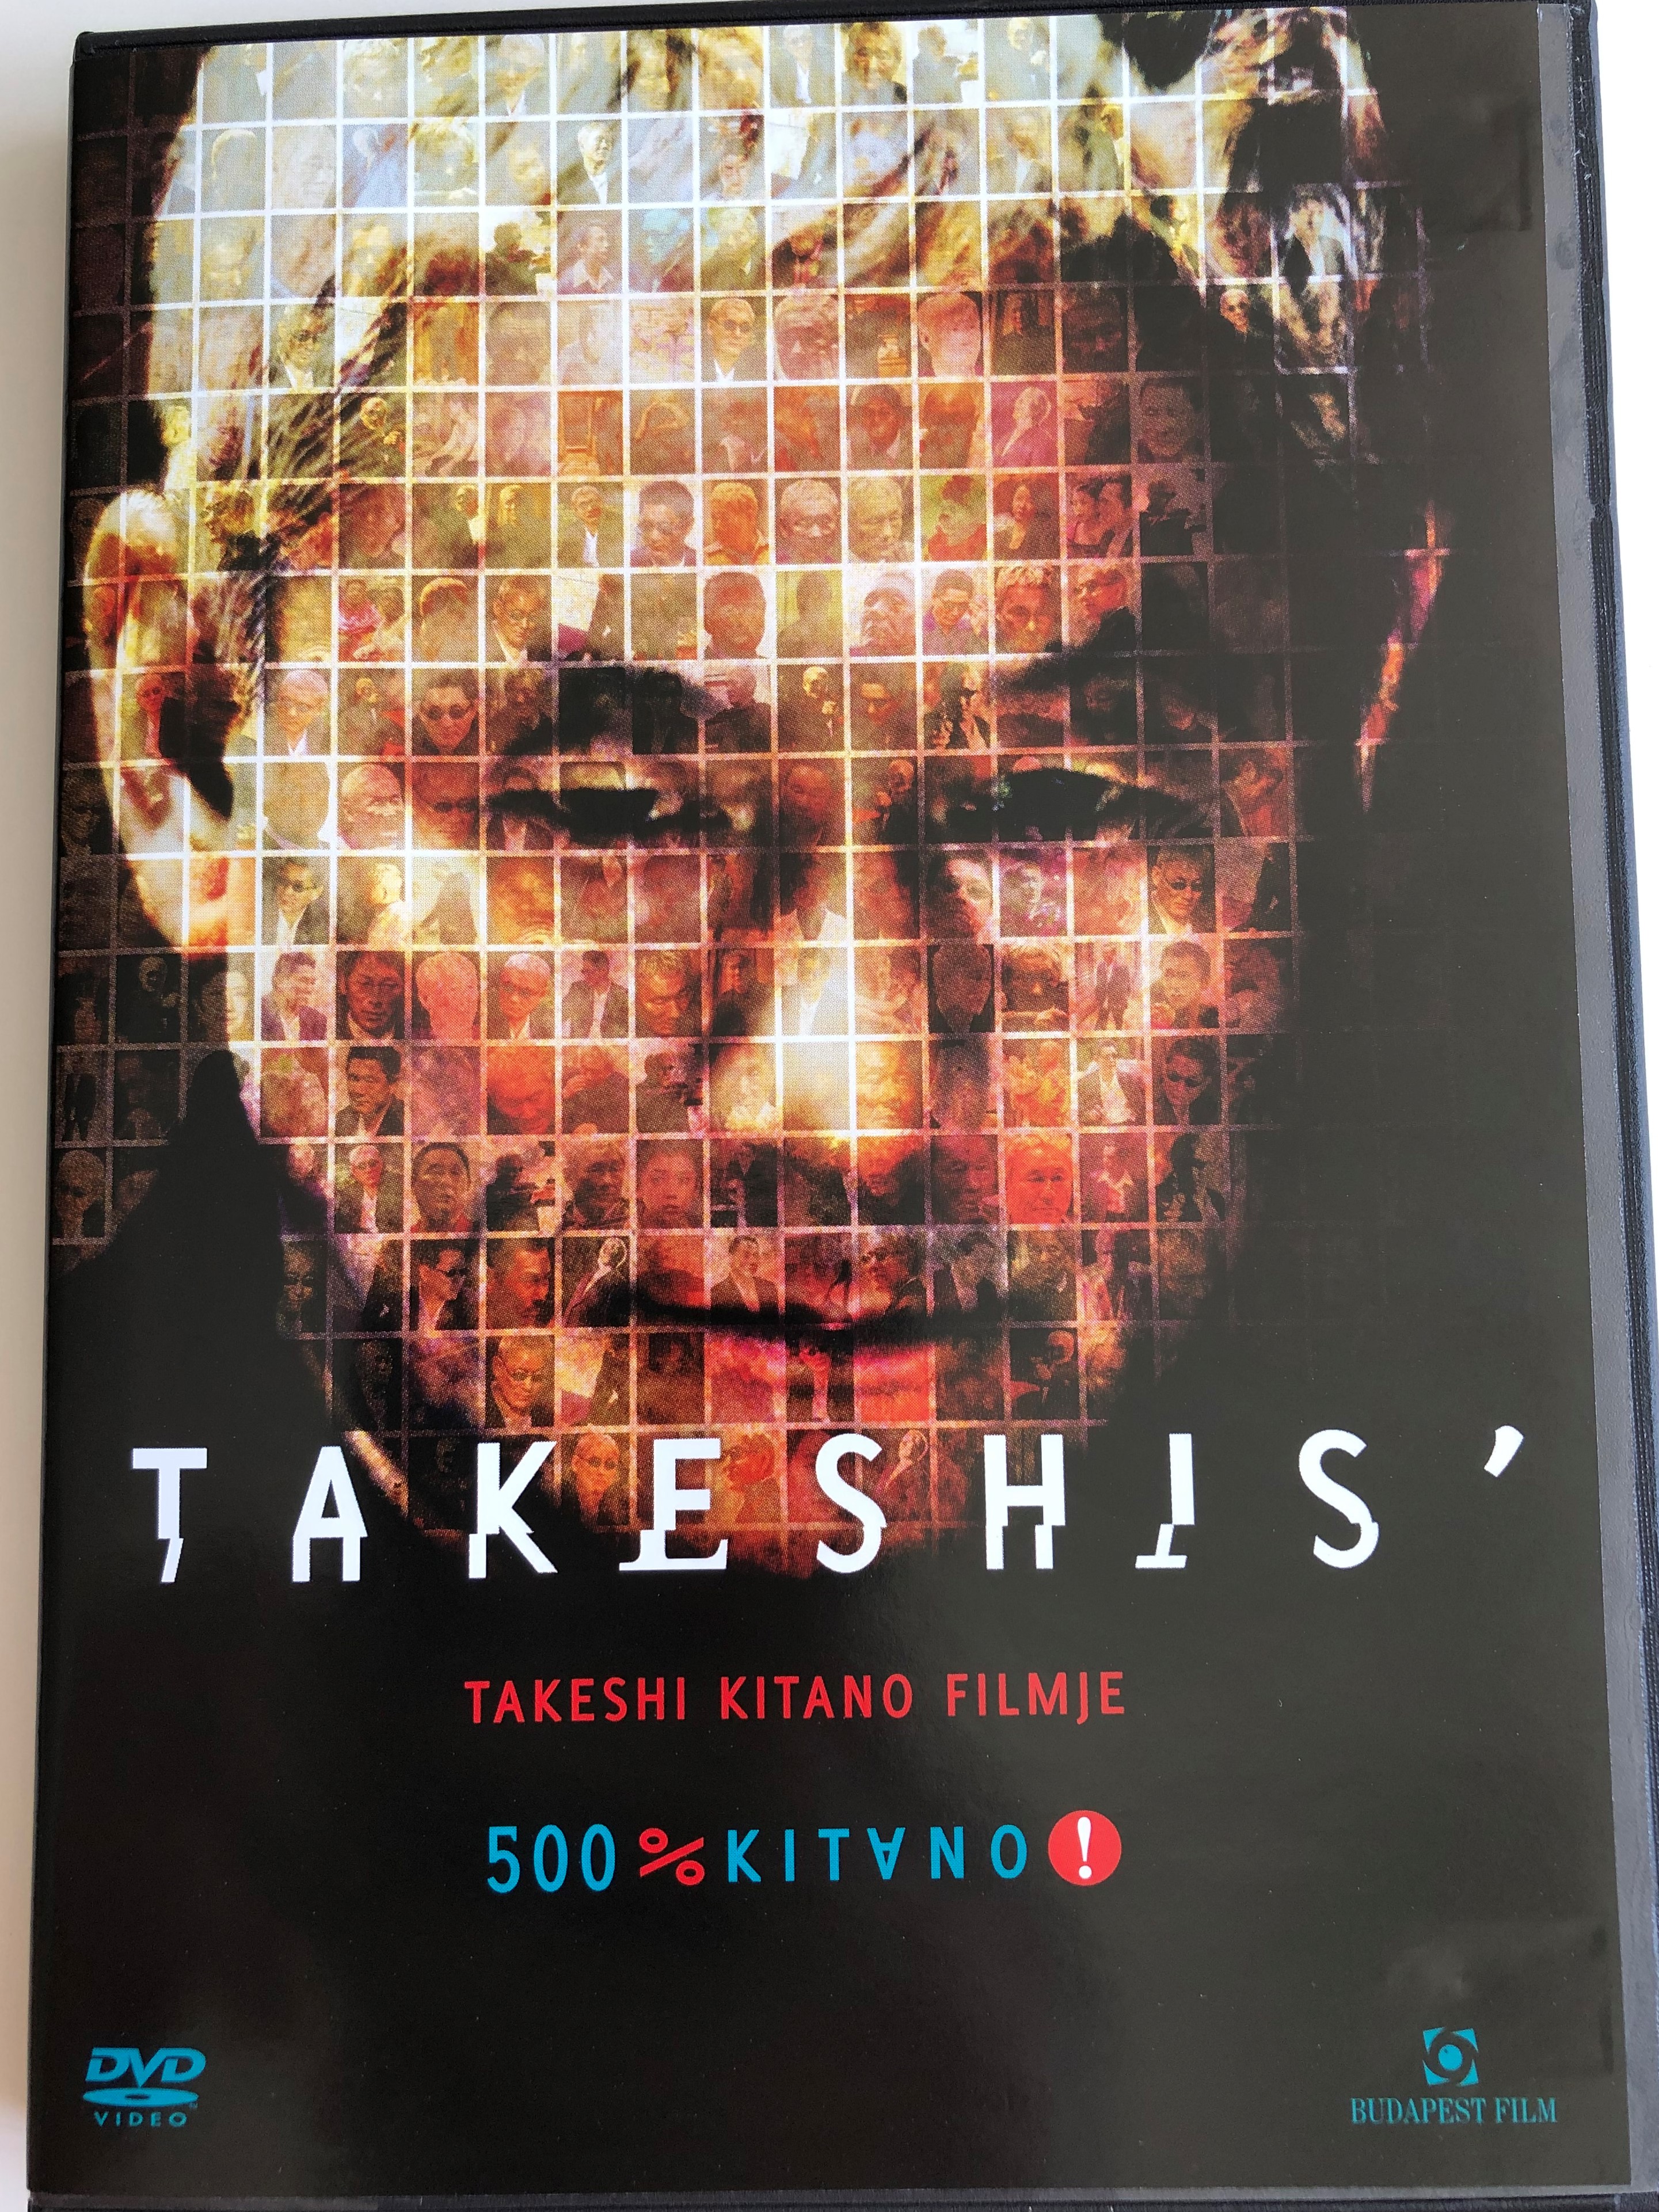 takeshis-dvd-2005-directed-by-takeshi-kitano-starring-beat-takeshi-susumu-terajima-kotomi-kyono-500-kitano-1-.jpg